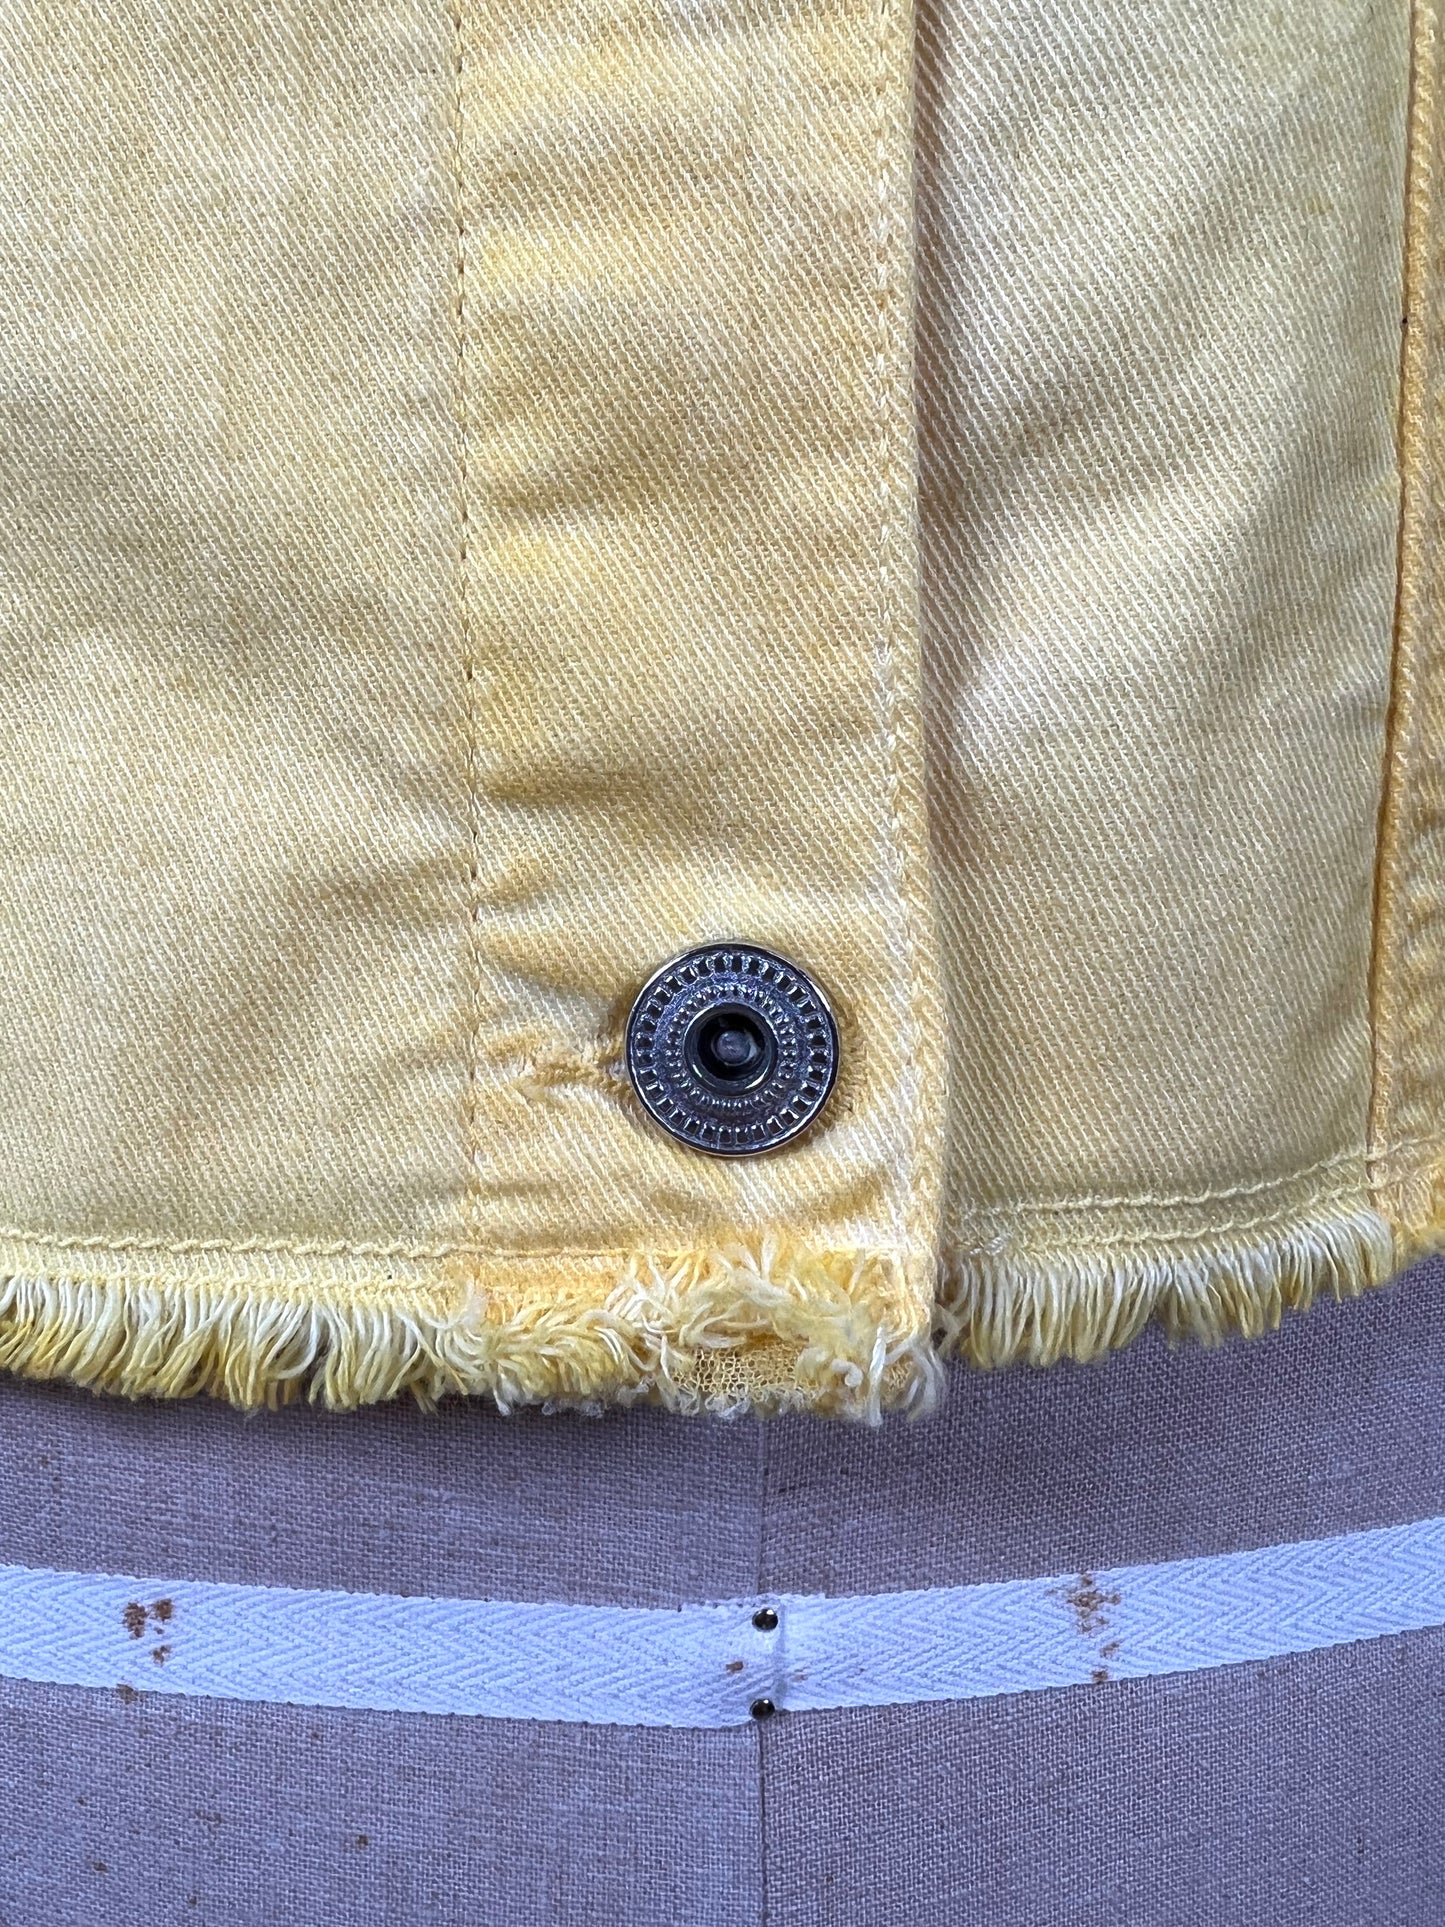 Veste jaune en denim à poches argentées (10)